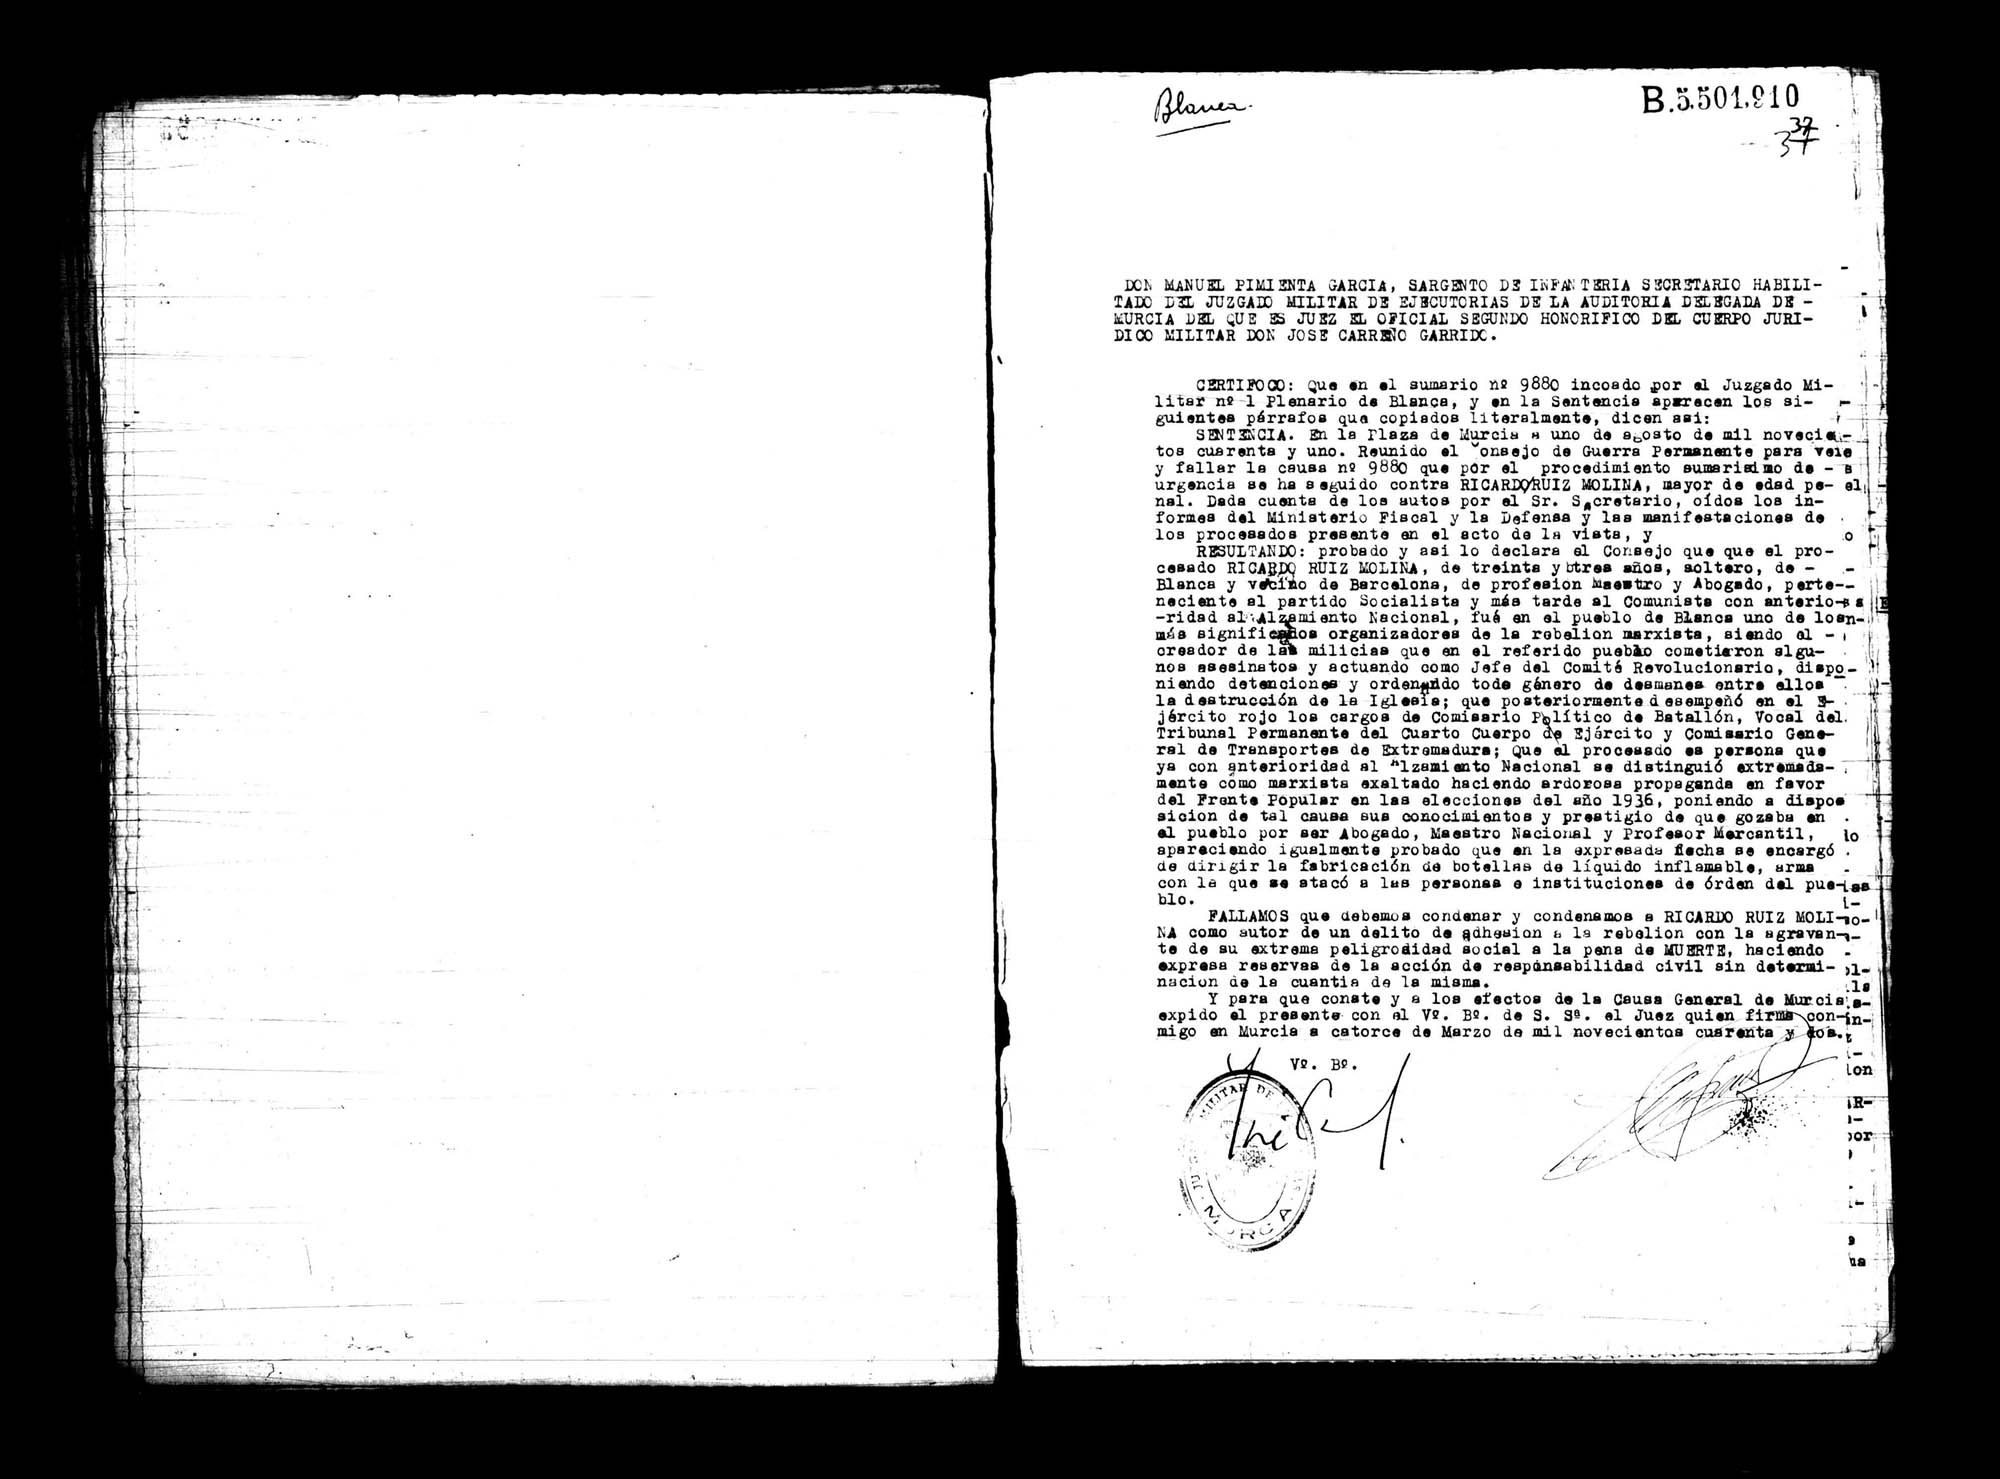 Certificado de la sentencia pronunciada contra Ricardo Ruiz Molina, causa 9880, el 1 de agosto de 1941.